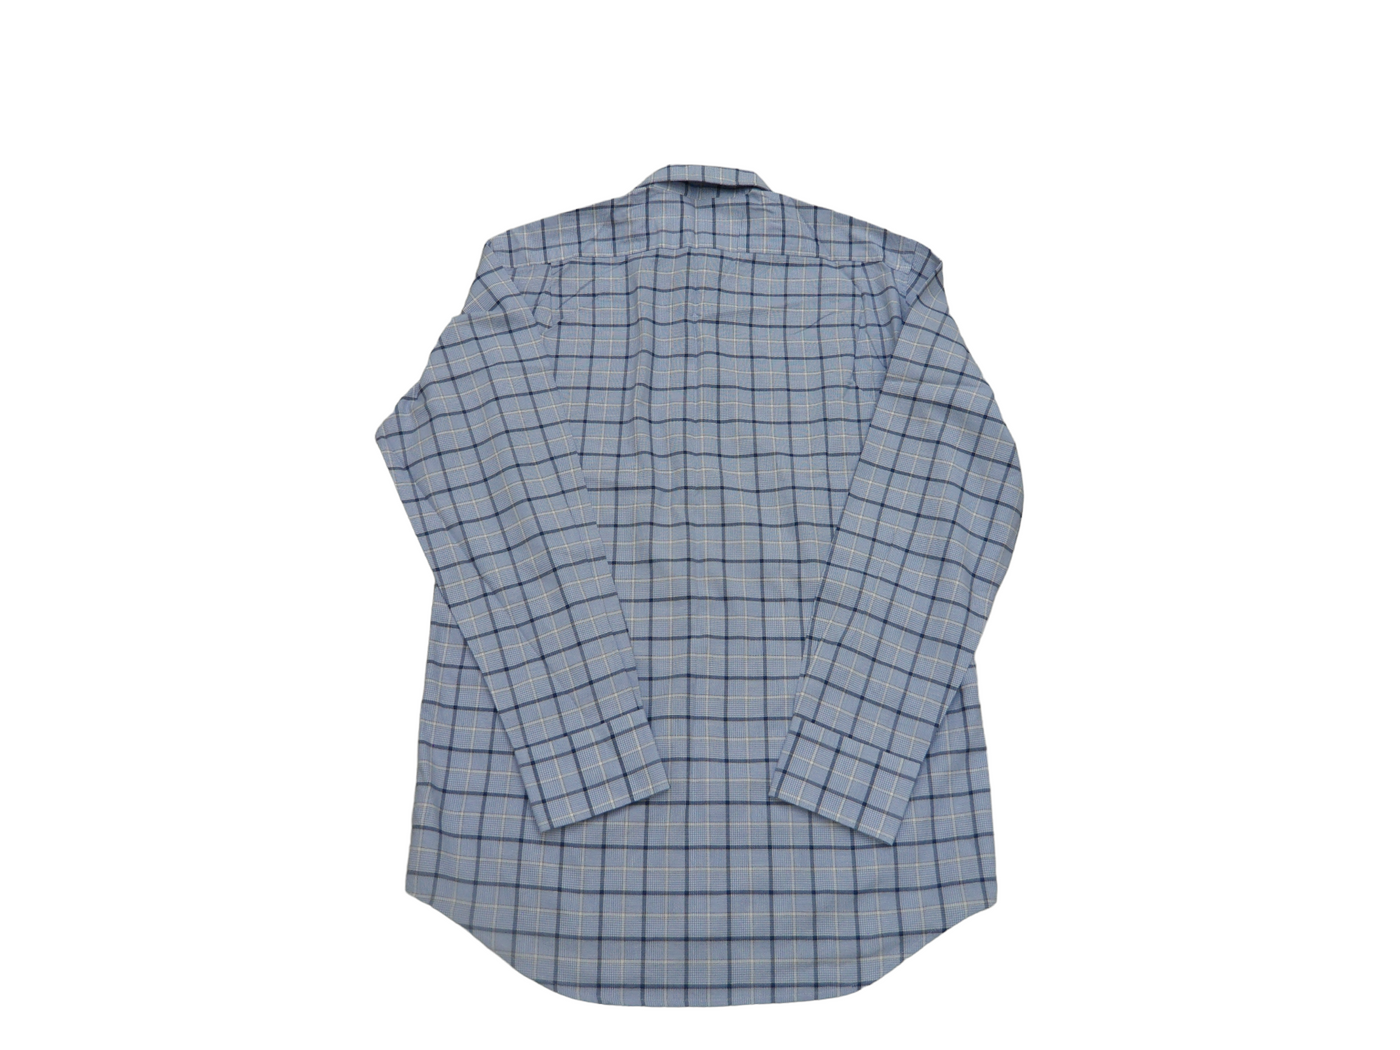 Vintage Lacoste Men's 100% Cotton Light Blue Plaid Button Down Long Sleeve Shirt - Medium (Size 38)